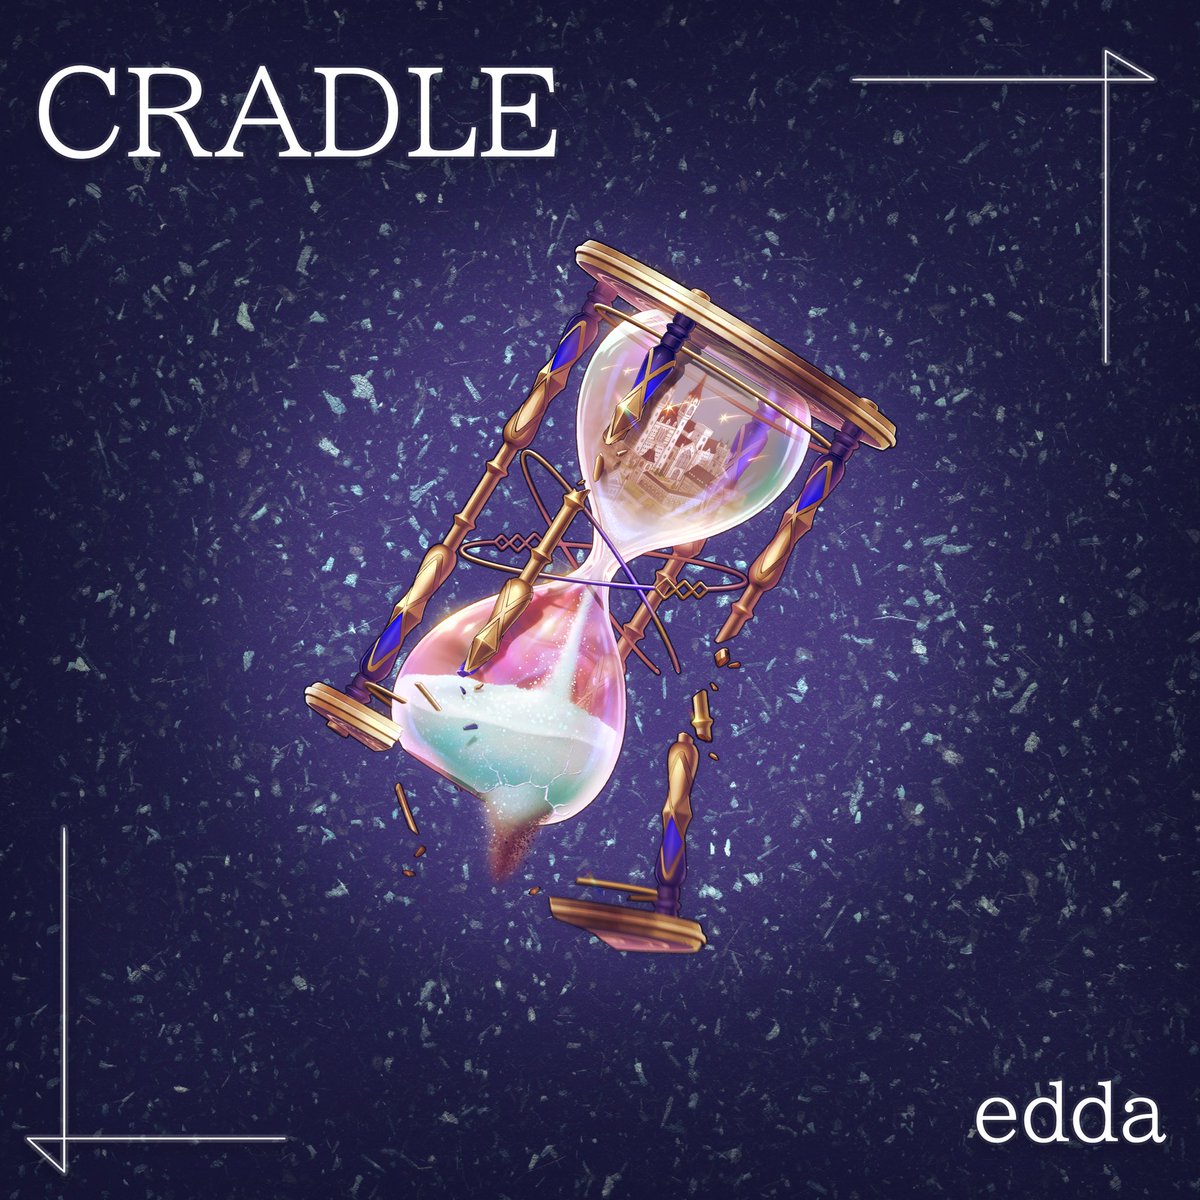 📚🧸新曲『CRADLE』リリース決定🧸🌿

ゲーム「廻らぬ星のステラリウム」(@ranuste )のために書き下ろした「CRADLE」のリリースが決定しました✨

【edda 配信SG「CRADLE」】
発売日：5月22日(水)
収録内容：CRADLE / I think so

カップリング楽曲もお楽しみに☀️

(案内人より🕯𓂃𓈒𓏸︎︎︎︎✼⁡)